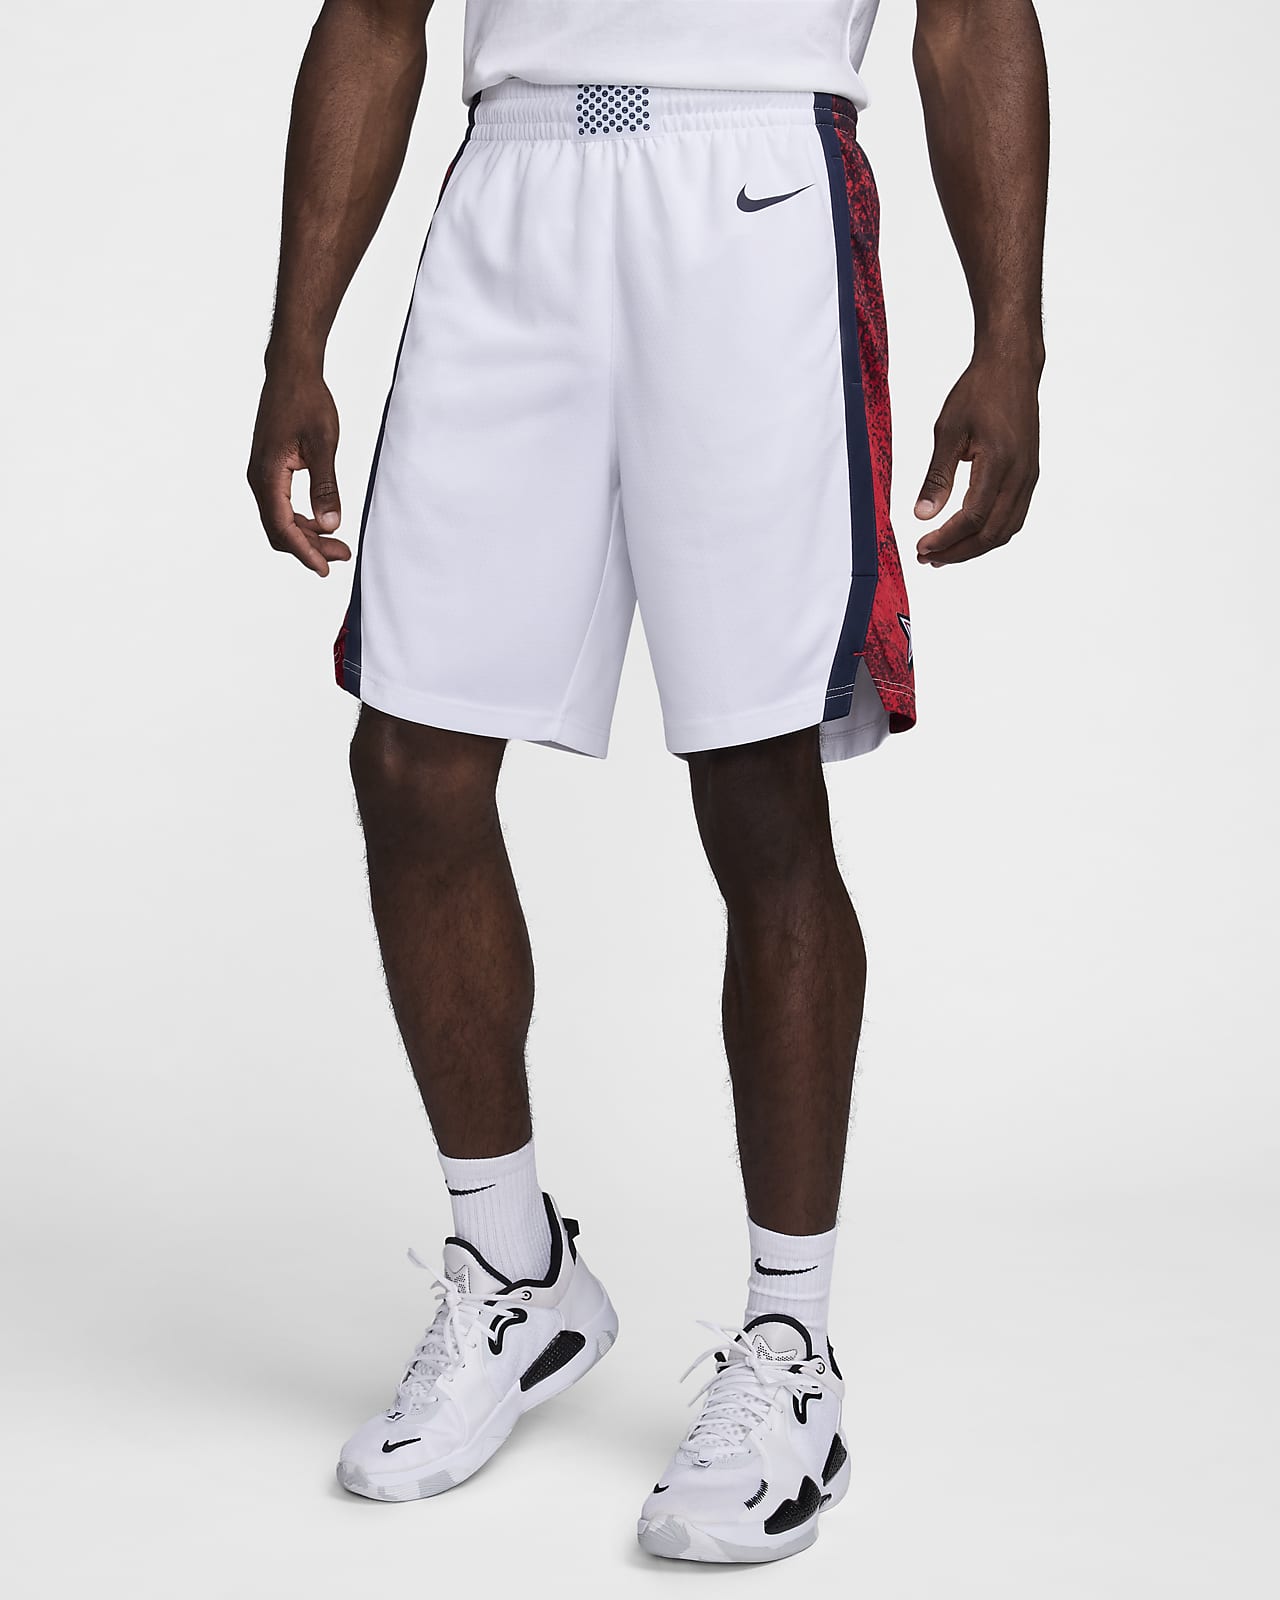 Short Nike Basketball États-Unis Limited Domicile pour homme